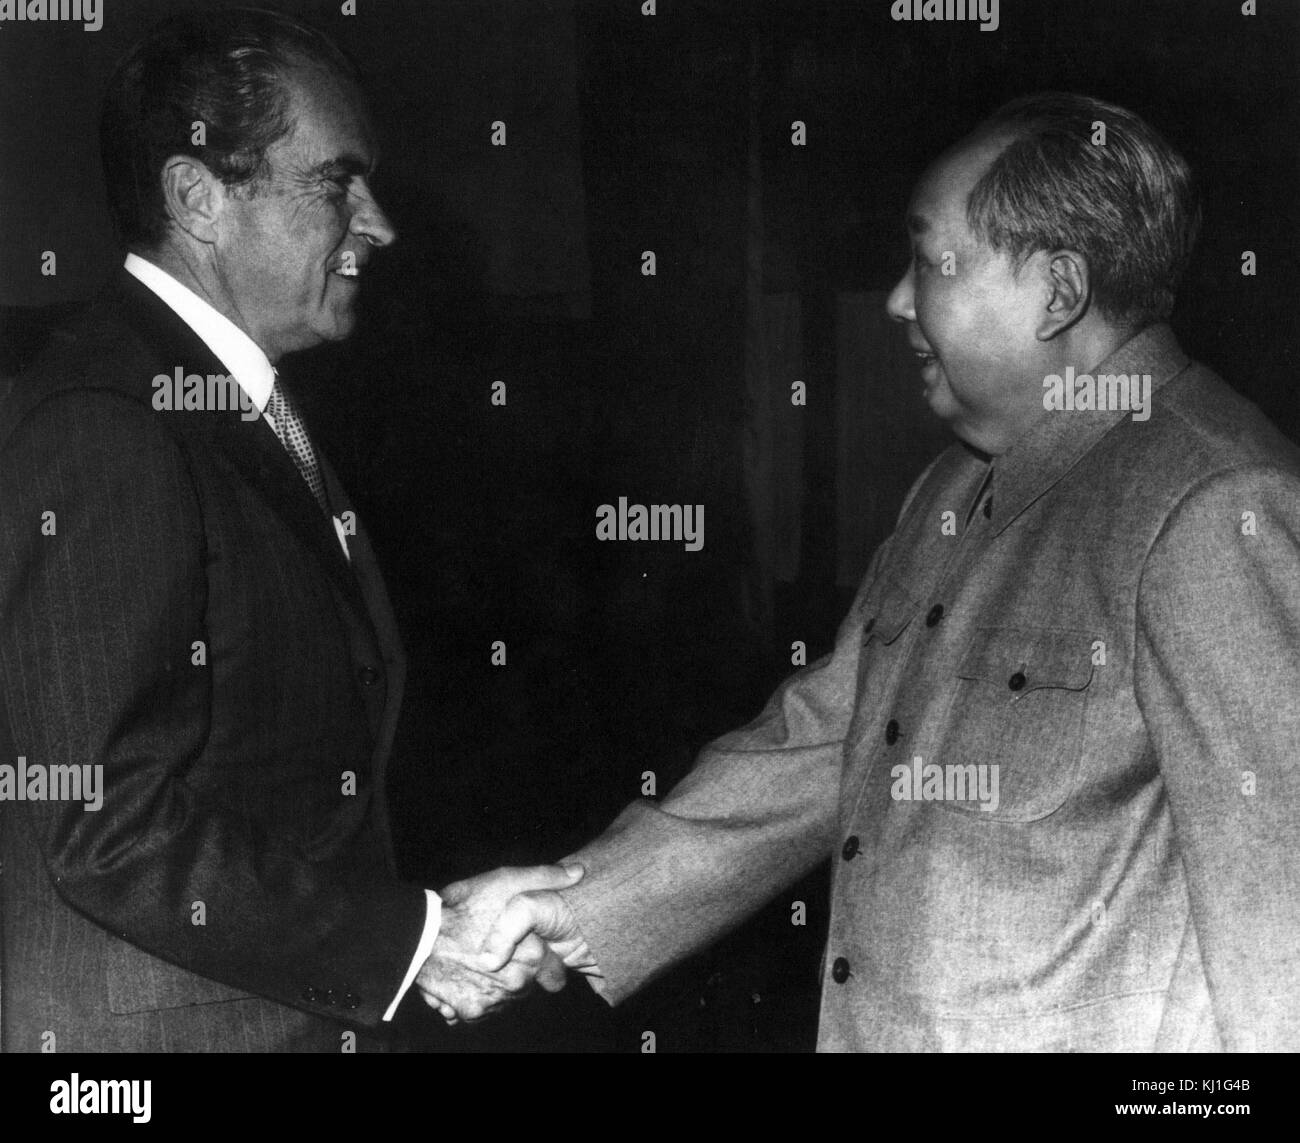 Le président américain, Richard Nixon, chef du Parti communiste chinois rencontre le président Mao Zedong ou Mao Tsé-toung (1893 - 1976), au cours de la visite du président américain en Chine en 1972 Banque D'Images